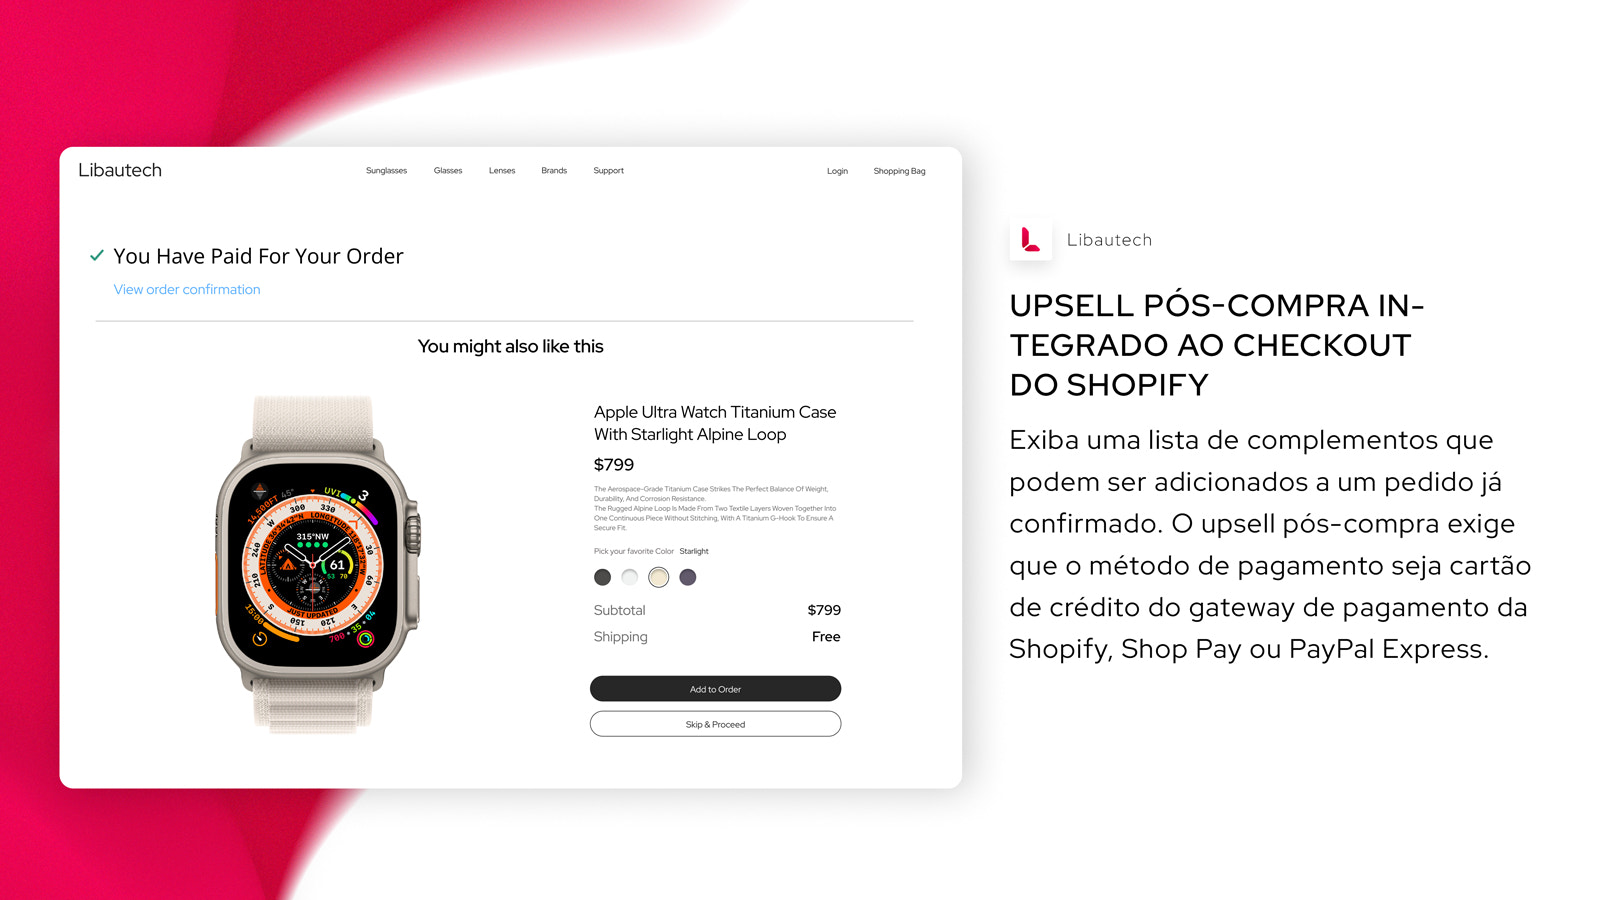 Upsell pós-compra integrado ao Checkout do Shopify 